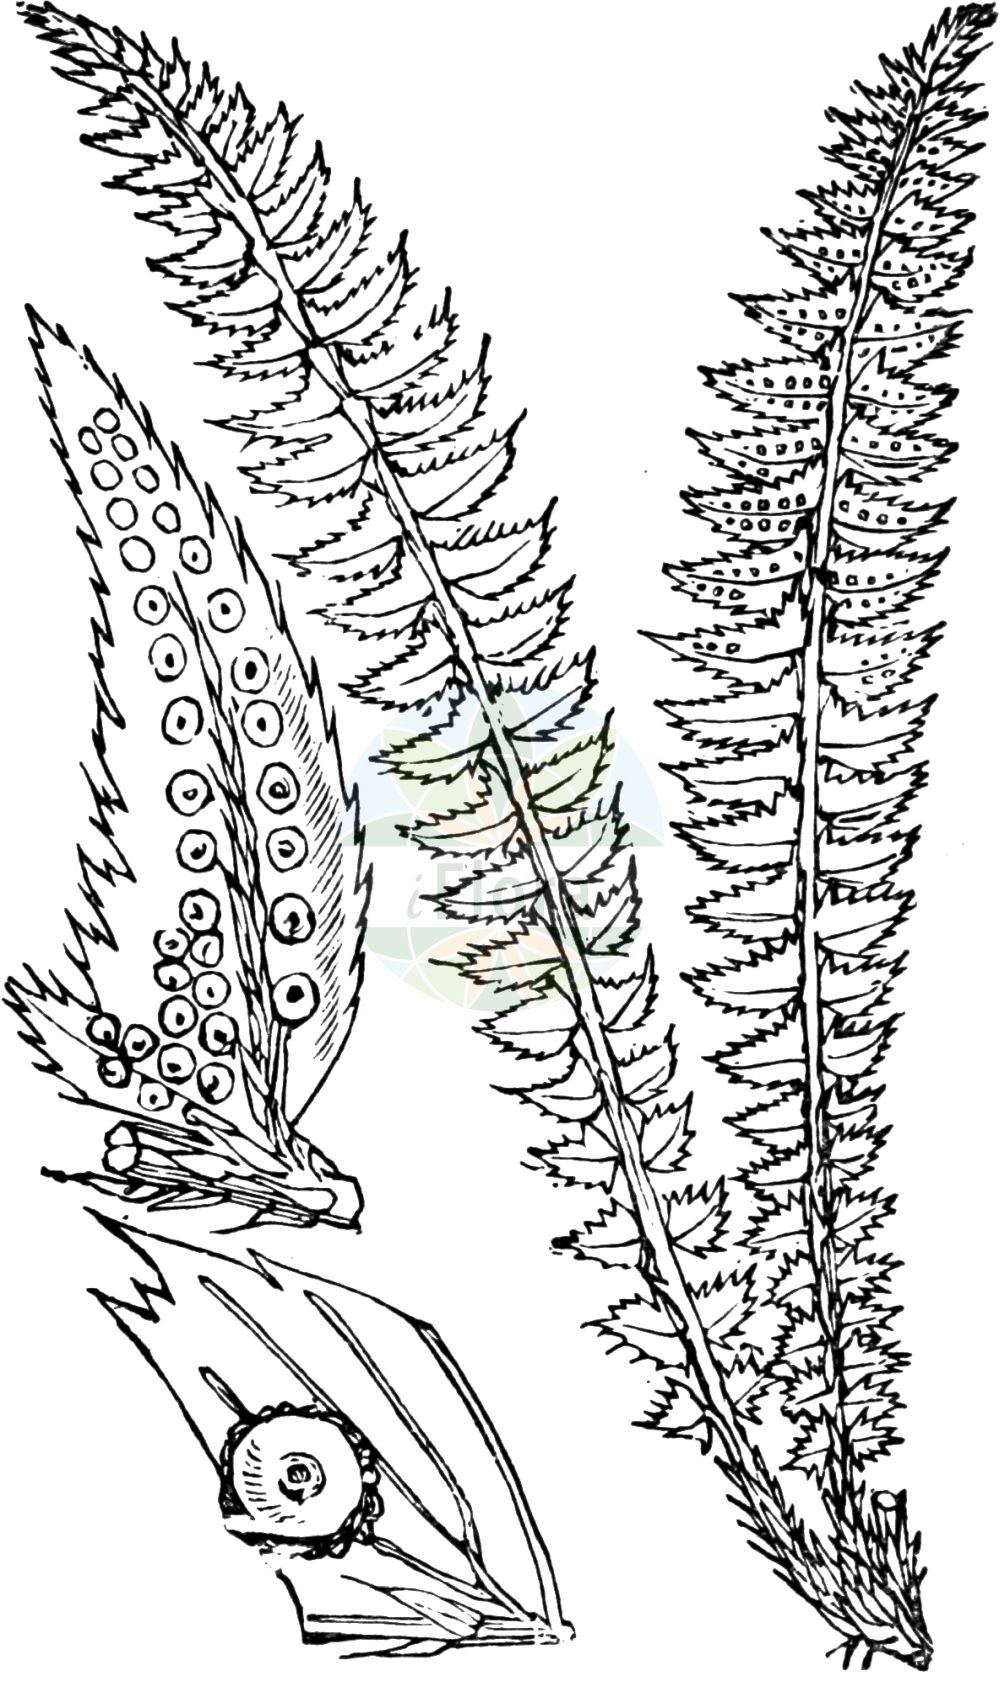 Historische Abbildung von Polystichum lonchitis (Lanzen-Schildfarn - Holly-fern). Das Bild zeigt Blatt, Bluete, Frucht und Same. ---- Historical Drawing of Polystichum lonchitis (Lanzen-Schildfarn - Holly-fern). The image is showing leaf, flower, fruit and seed.(Polystichum lonchitis,Lanzen-Schildfarn,Holly-fern,Aspidium lonchitis,Dryopteris lonchitis,Polypodium lonchitis,Polystichum lonchitis,Lanzen-Schildfarn,Holly-fern,Northern Hollyfern,Polystichum,Schildfarn,Holly-fern,Dryopteridaceae,Wurmfarngewächse,Wood Fern family,Blatt,Bluete,Frucht,Same,leaf,flower,fruit,seed,Fitch et al. (1880))